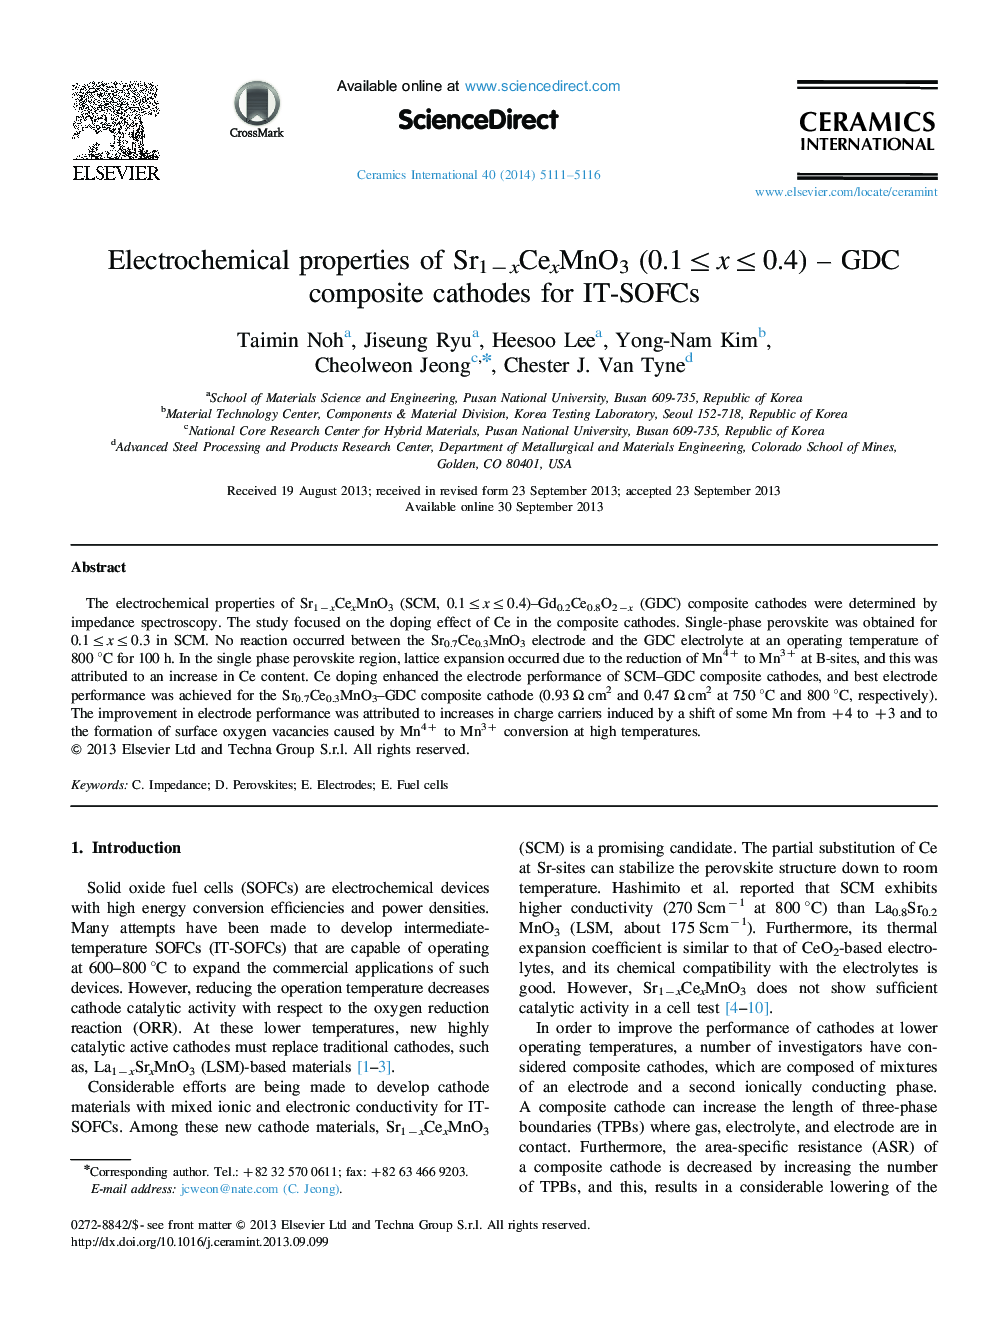 Electrochemical properties of Sr1âxCexMnO3 (0.1â¤xâ¤0.4) - GDC composite cathodes for IT-SOFCs